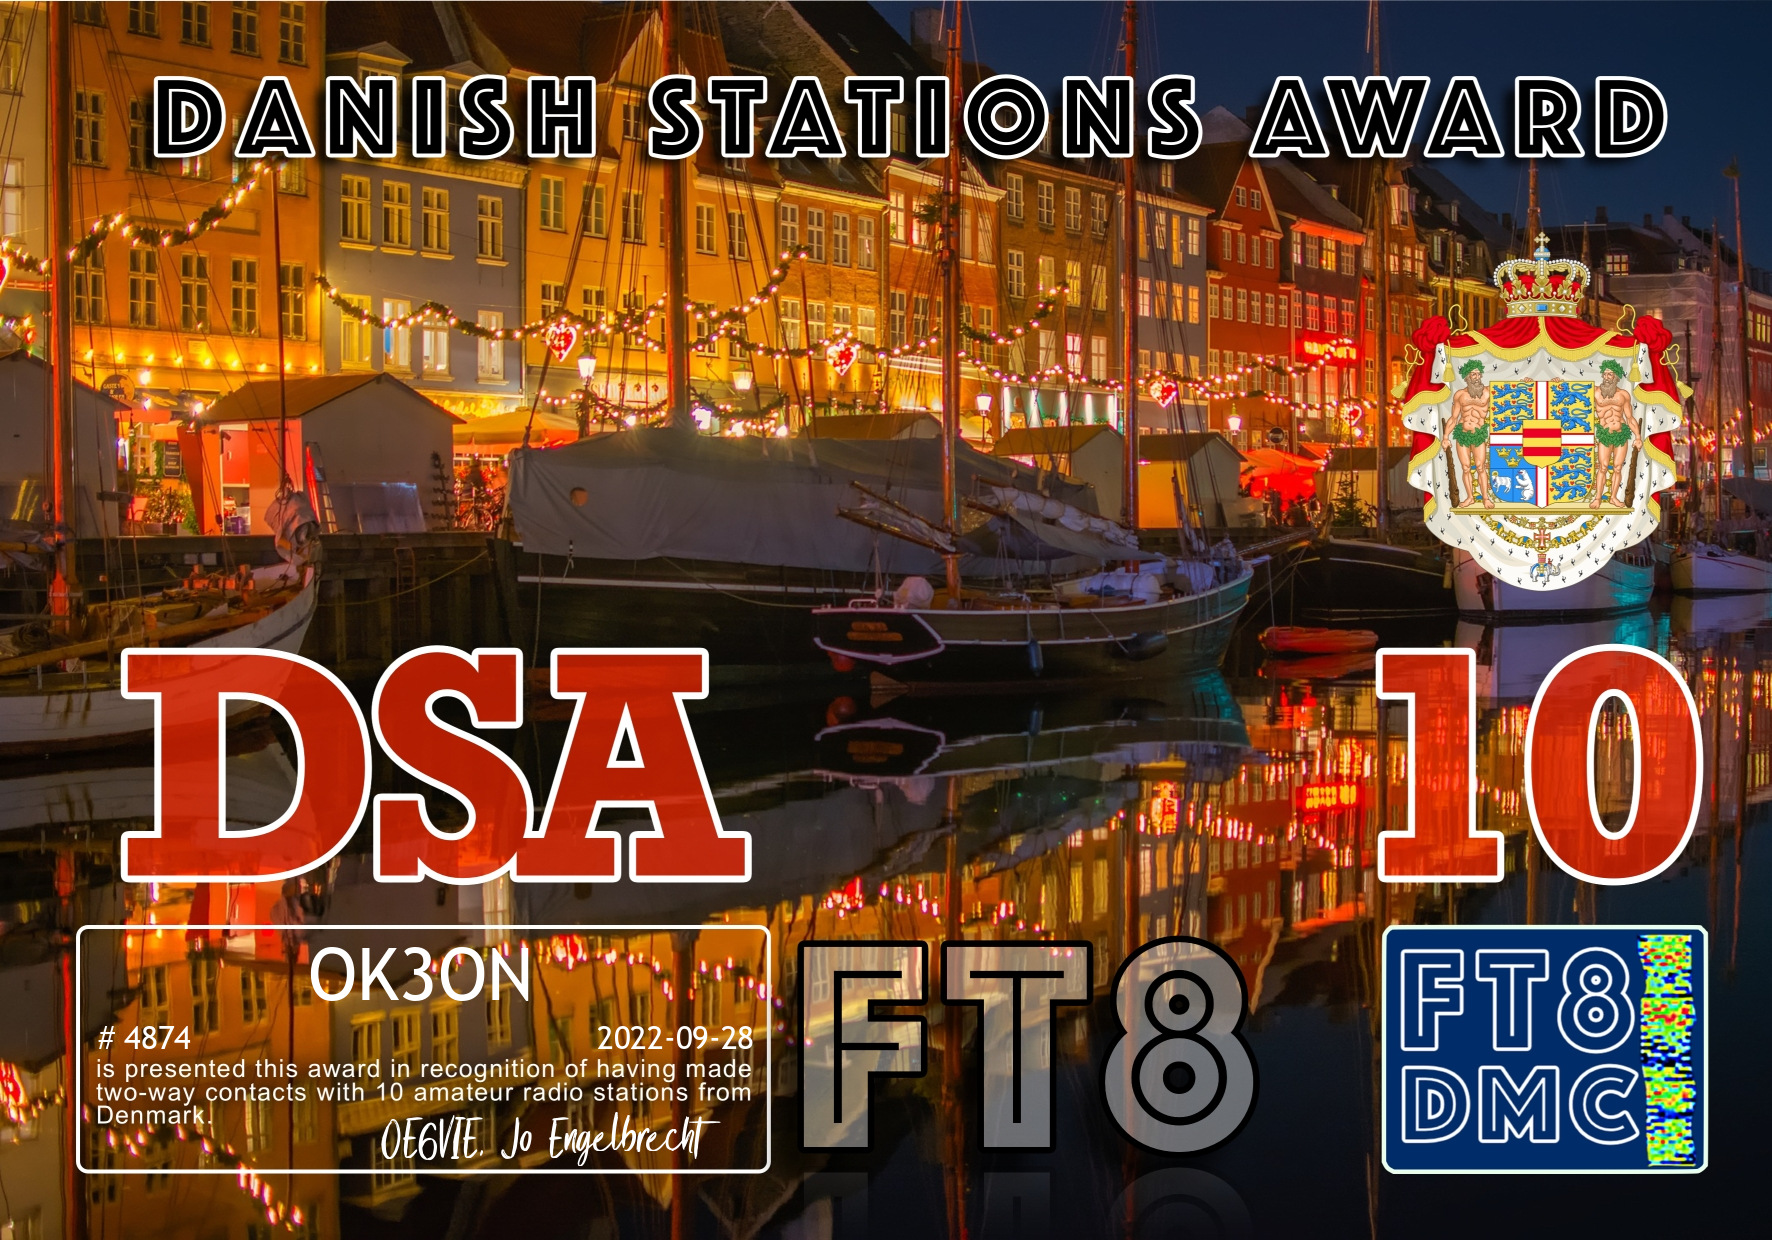 awards/OK3ON-DSA-10_FT8DMC.jpg